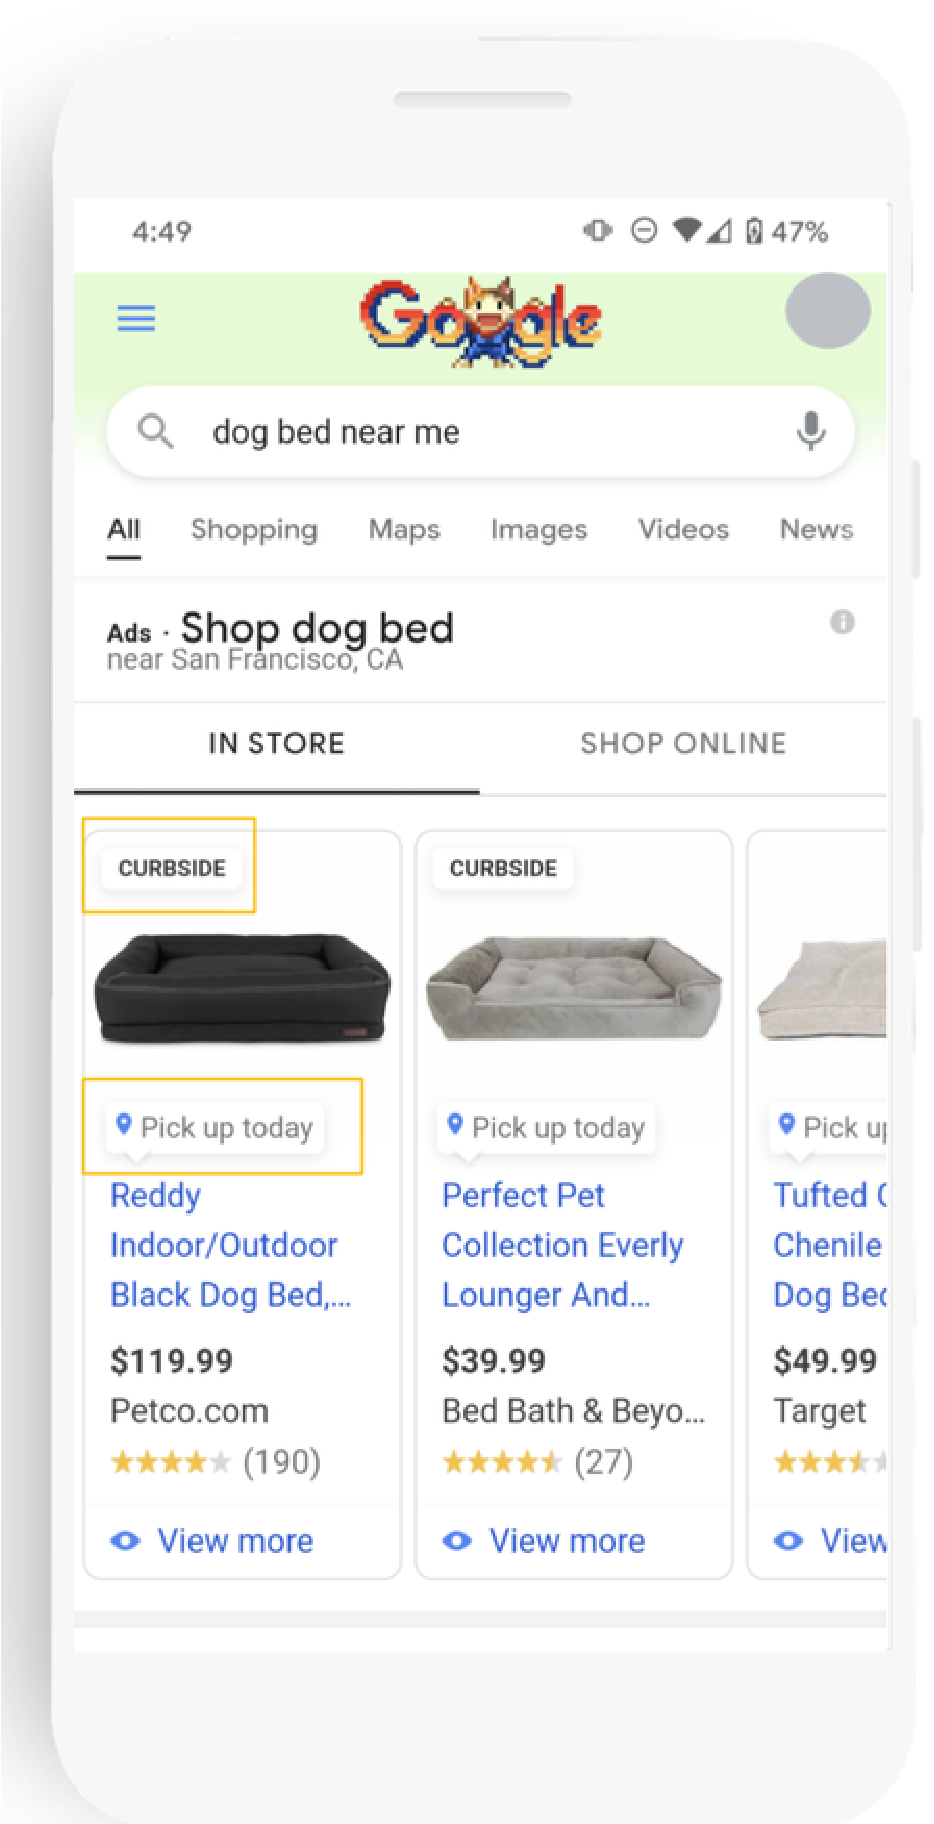 Auf dem Bild sind Google Shopping-Ergebnisse zu sehen, deren Produkte nicht nur online, sondern auch im Store zu finden sind. Diese sind mit einem speziellen Abholungs-Label versehen (gelb gekennzeichnet).